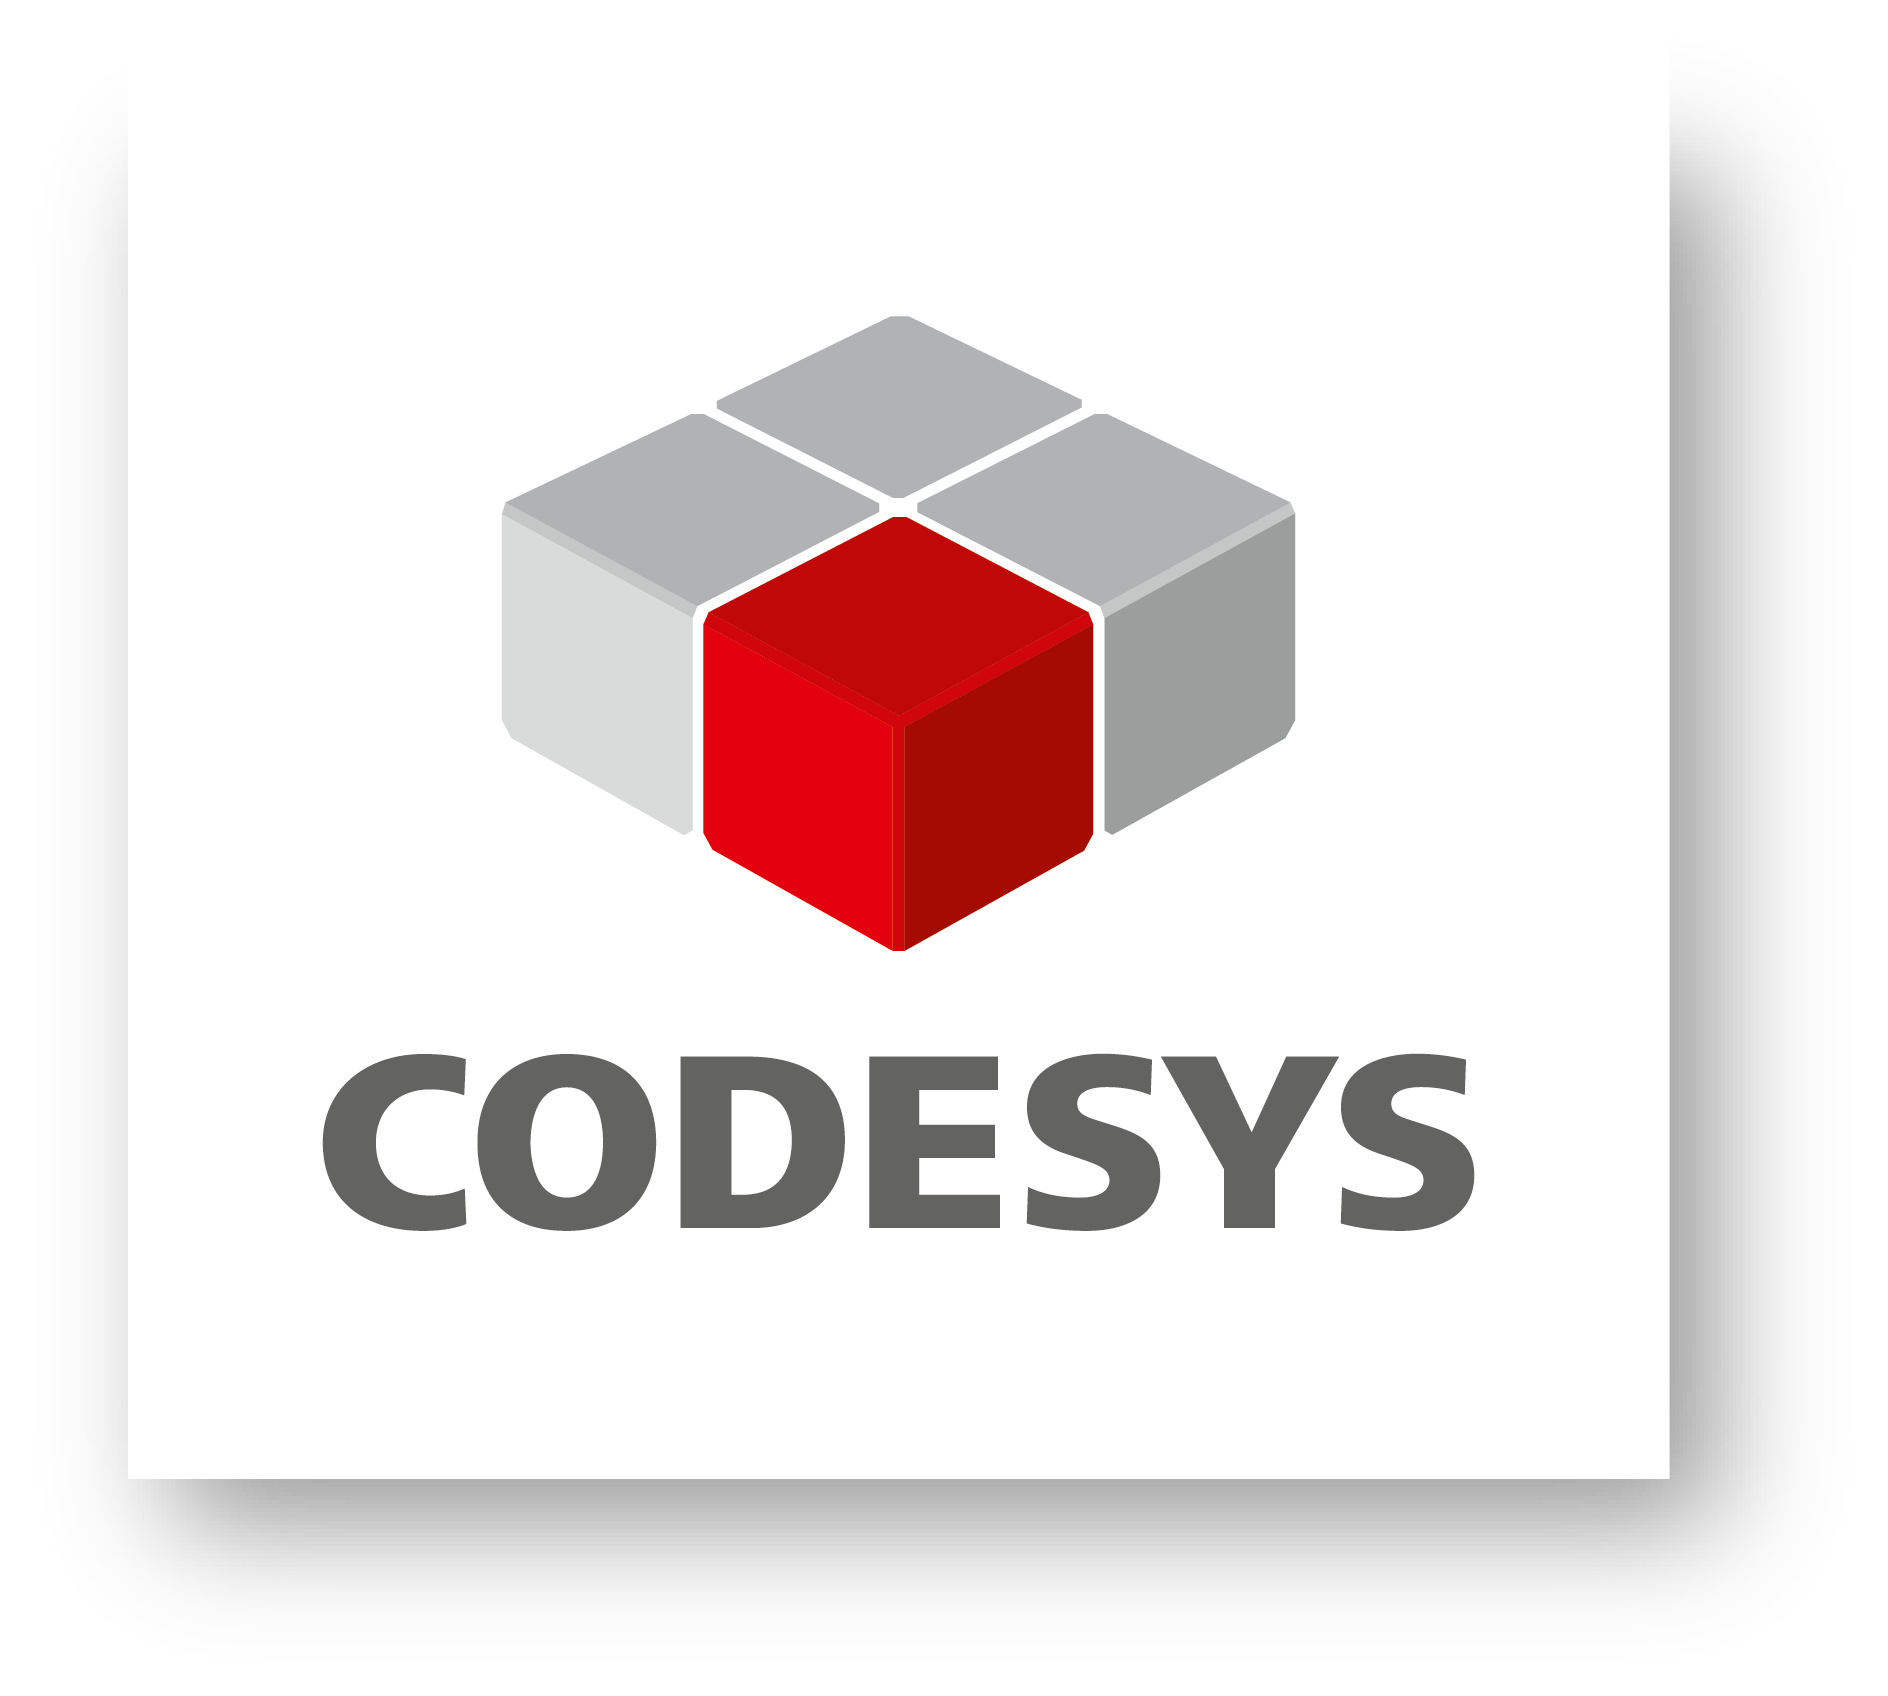 CODESYS_Logo